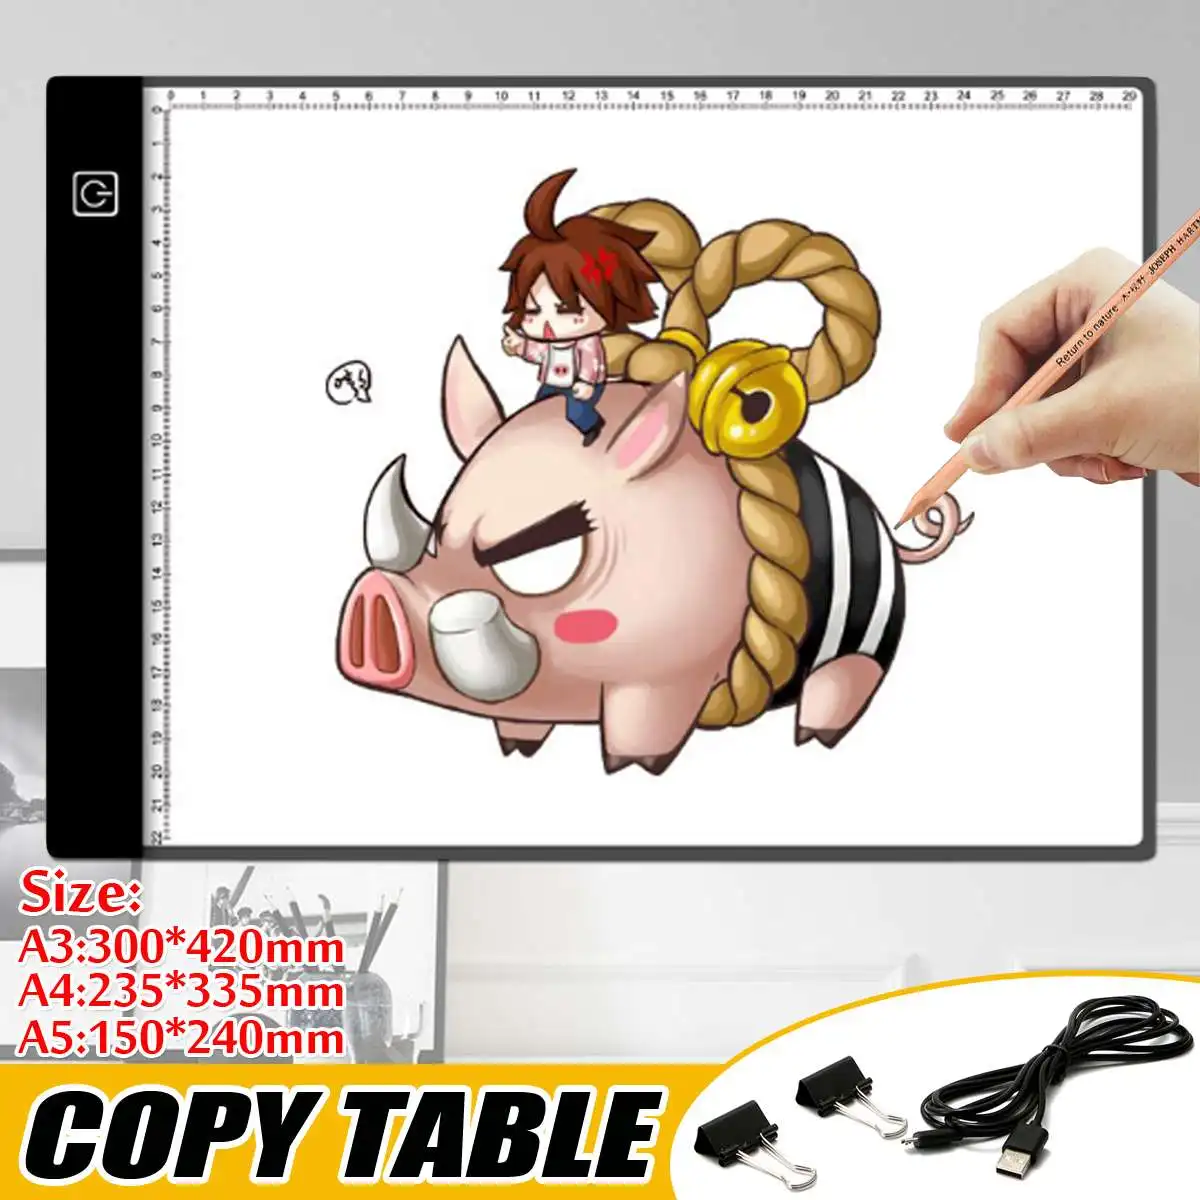 Scară de Bord Pad Desen Tabletă cu Stilou Stylus Reglare a intensității luminoase Led Bord Copie A5 A3 A4 Tabletă digitală tableta grafica desen